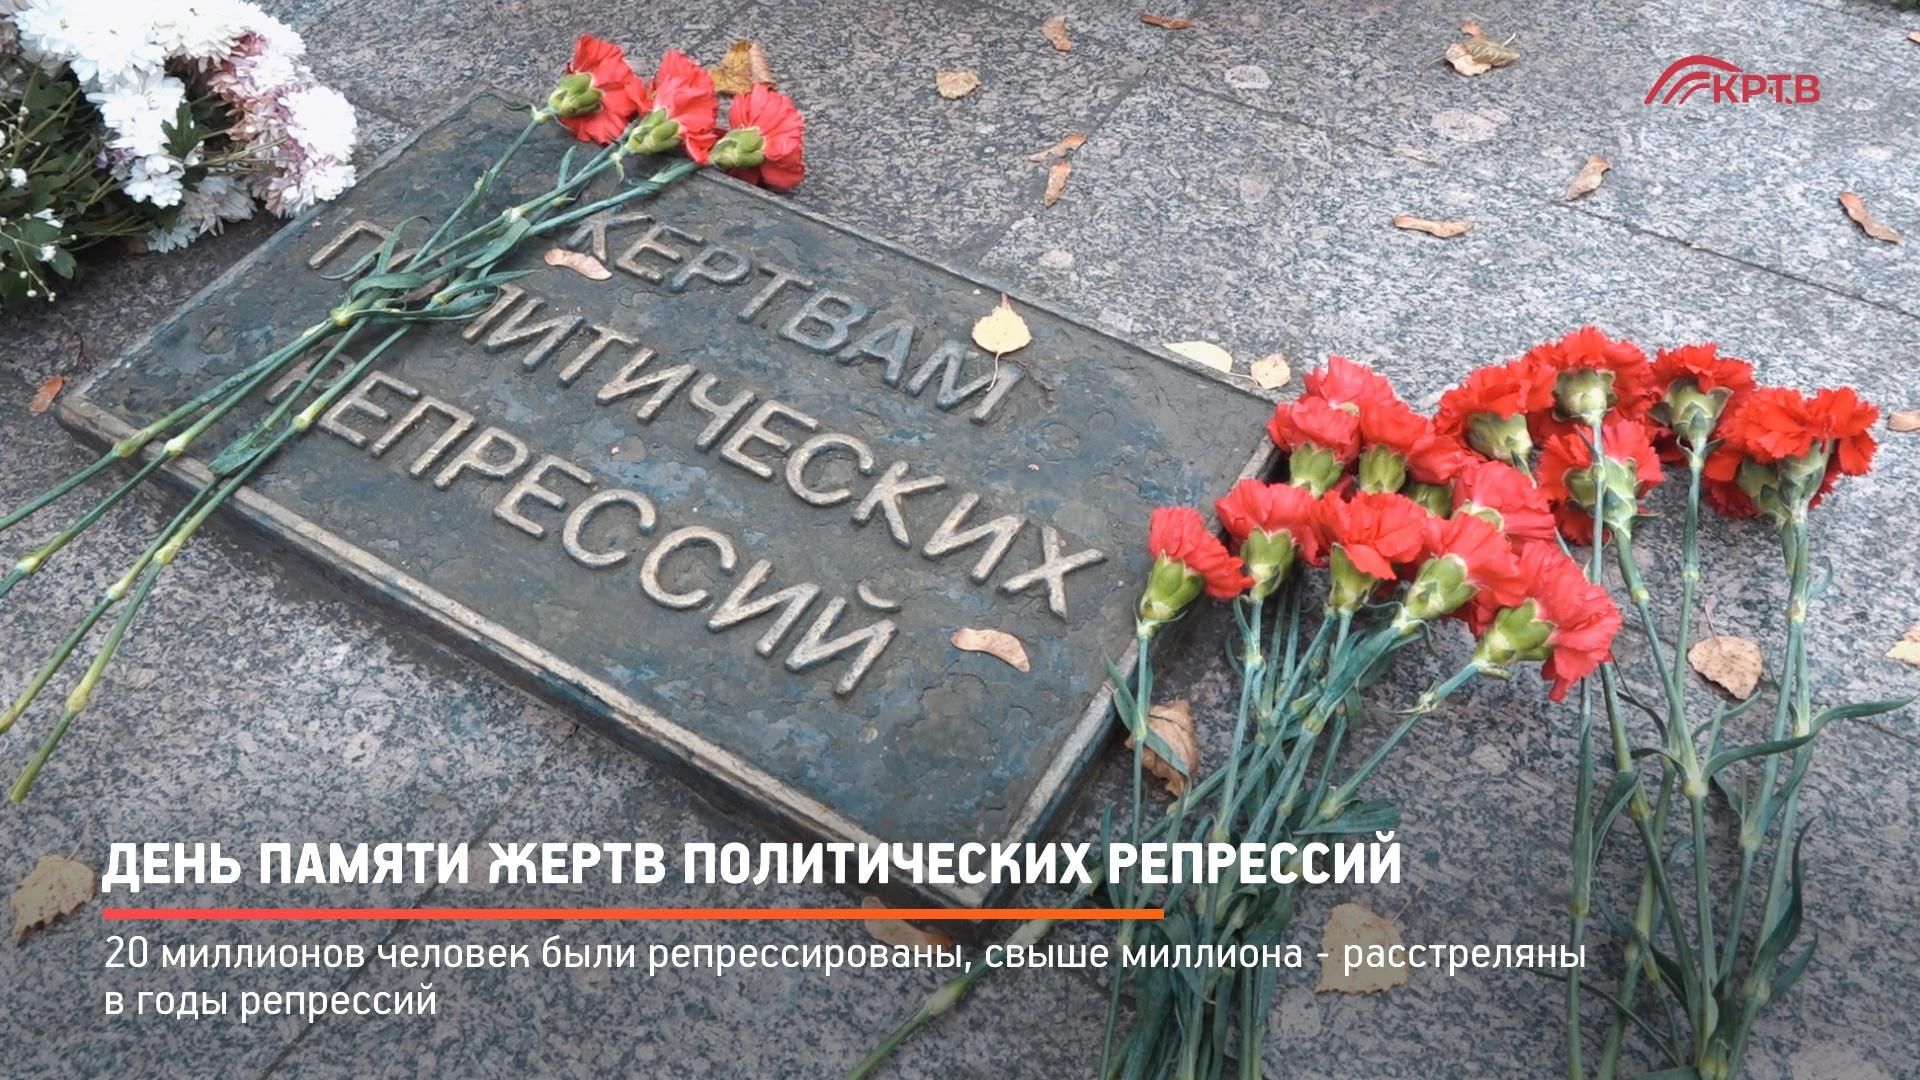 30 Октября день памяти жертв политических репрессий в России